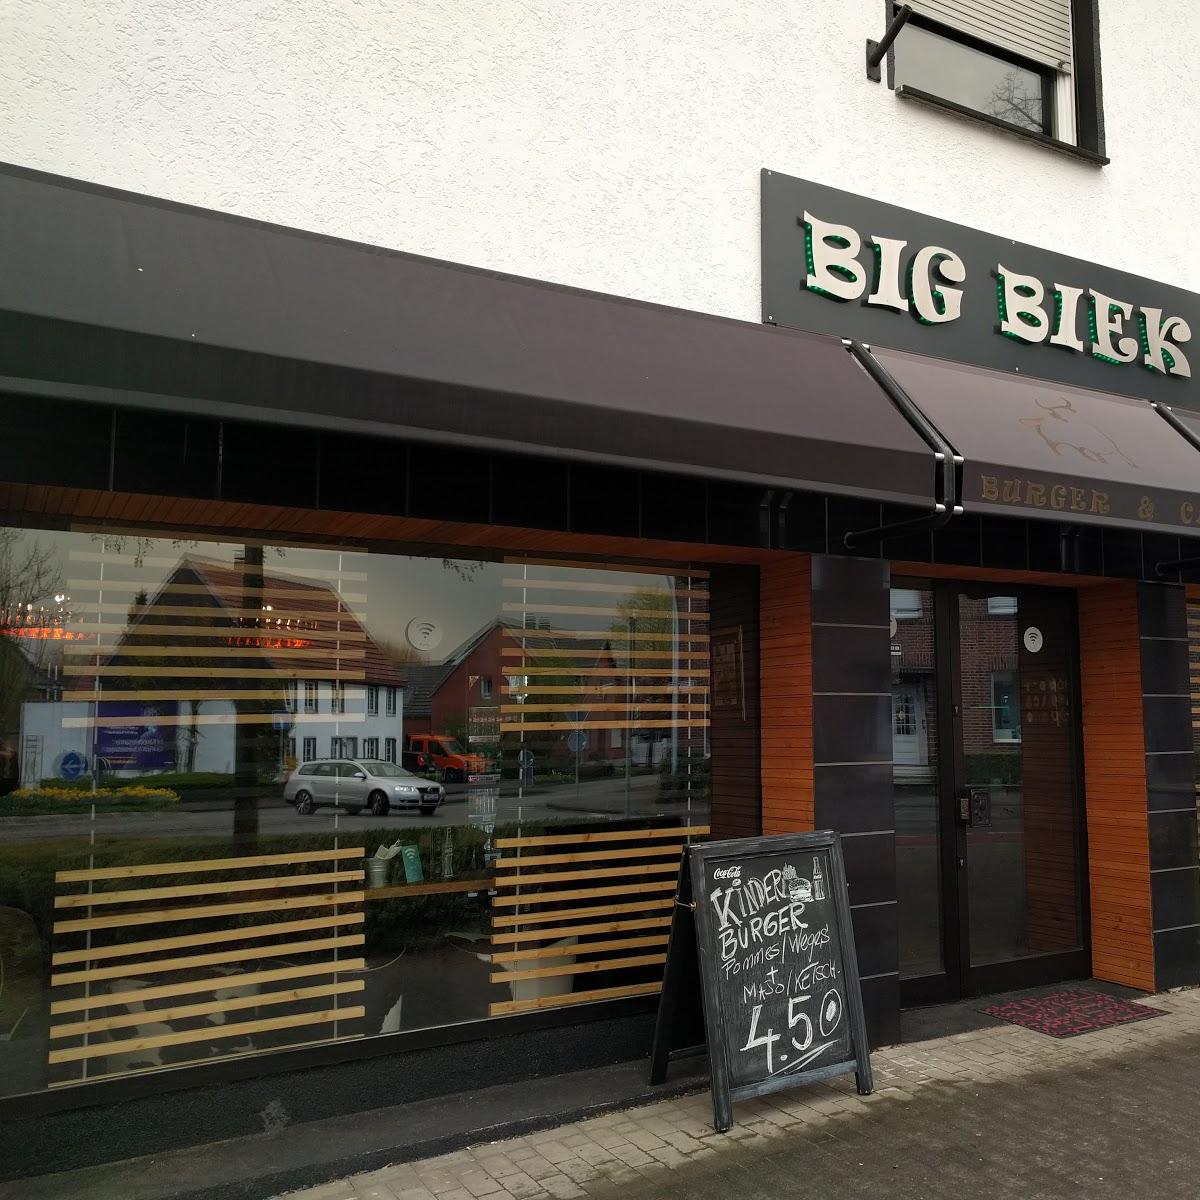 Restaurant "Big Biek" in  Oelde